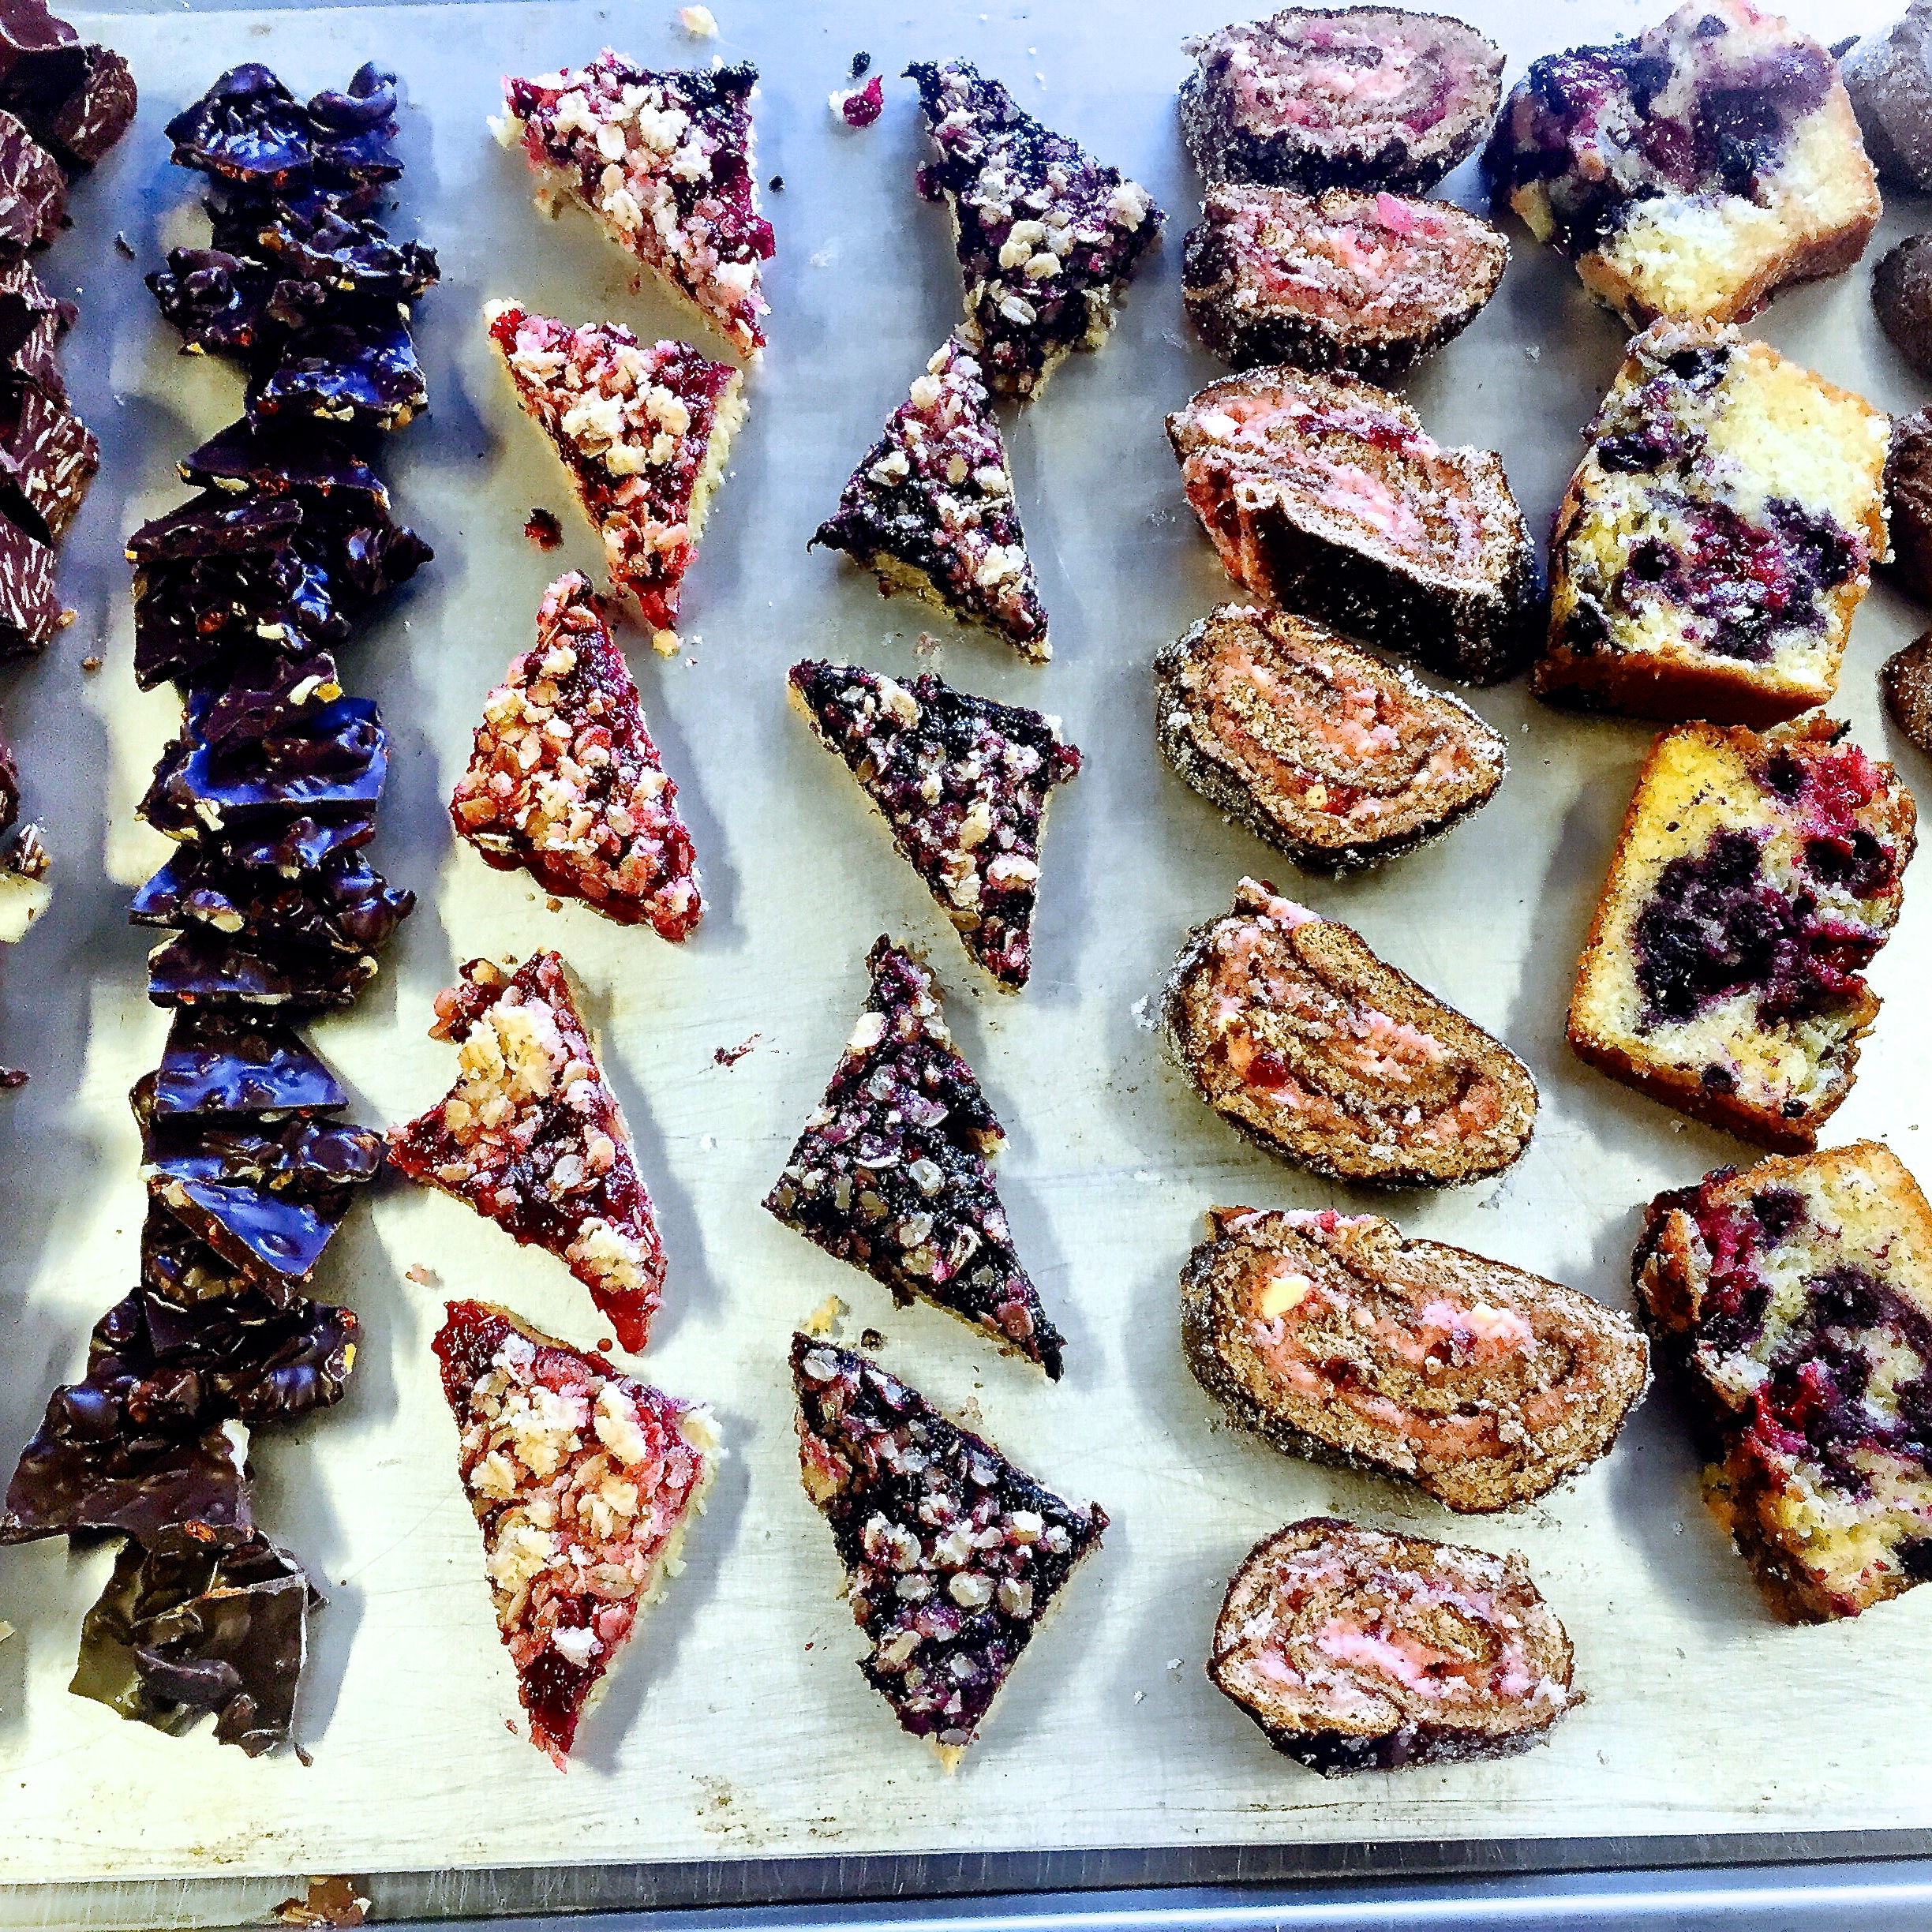 Wienernougat, Nöt- och fruktchoklad, Lingonsnitt, Blåbärssnitt, Pepparkaksrulltårta med lingonsmörkräm, Drottningkaka